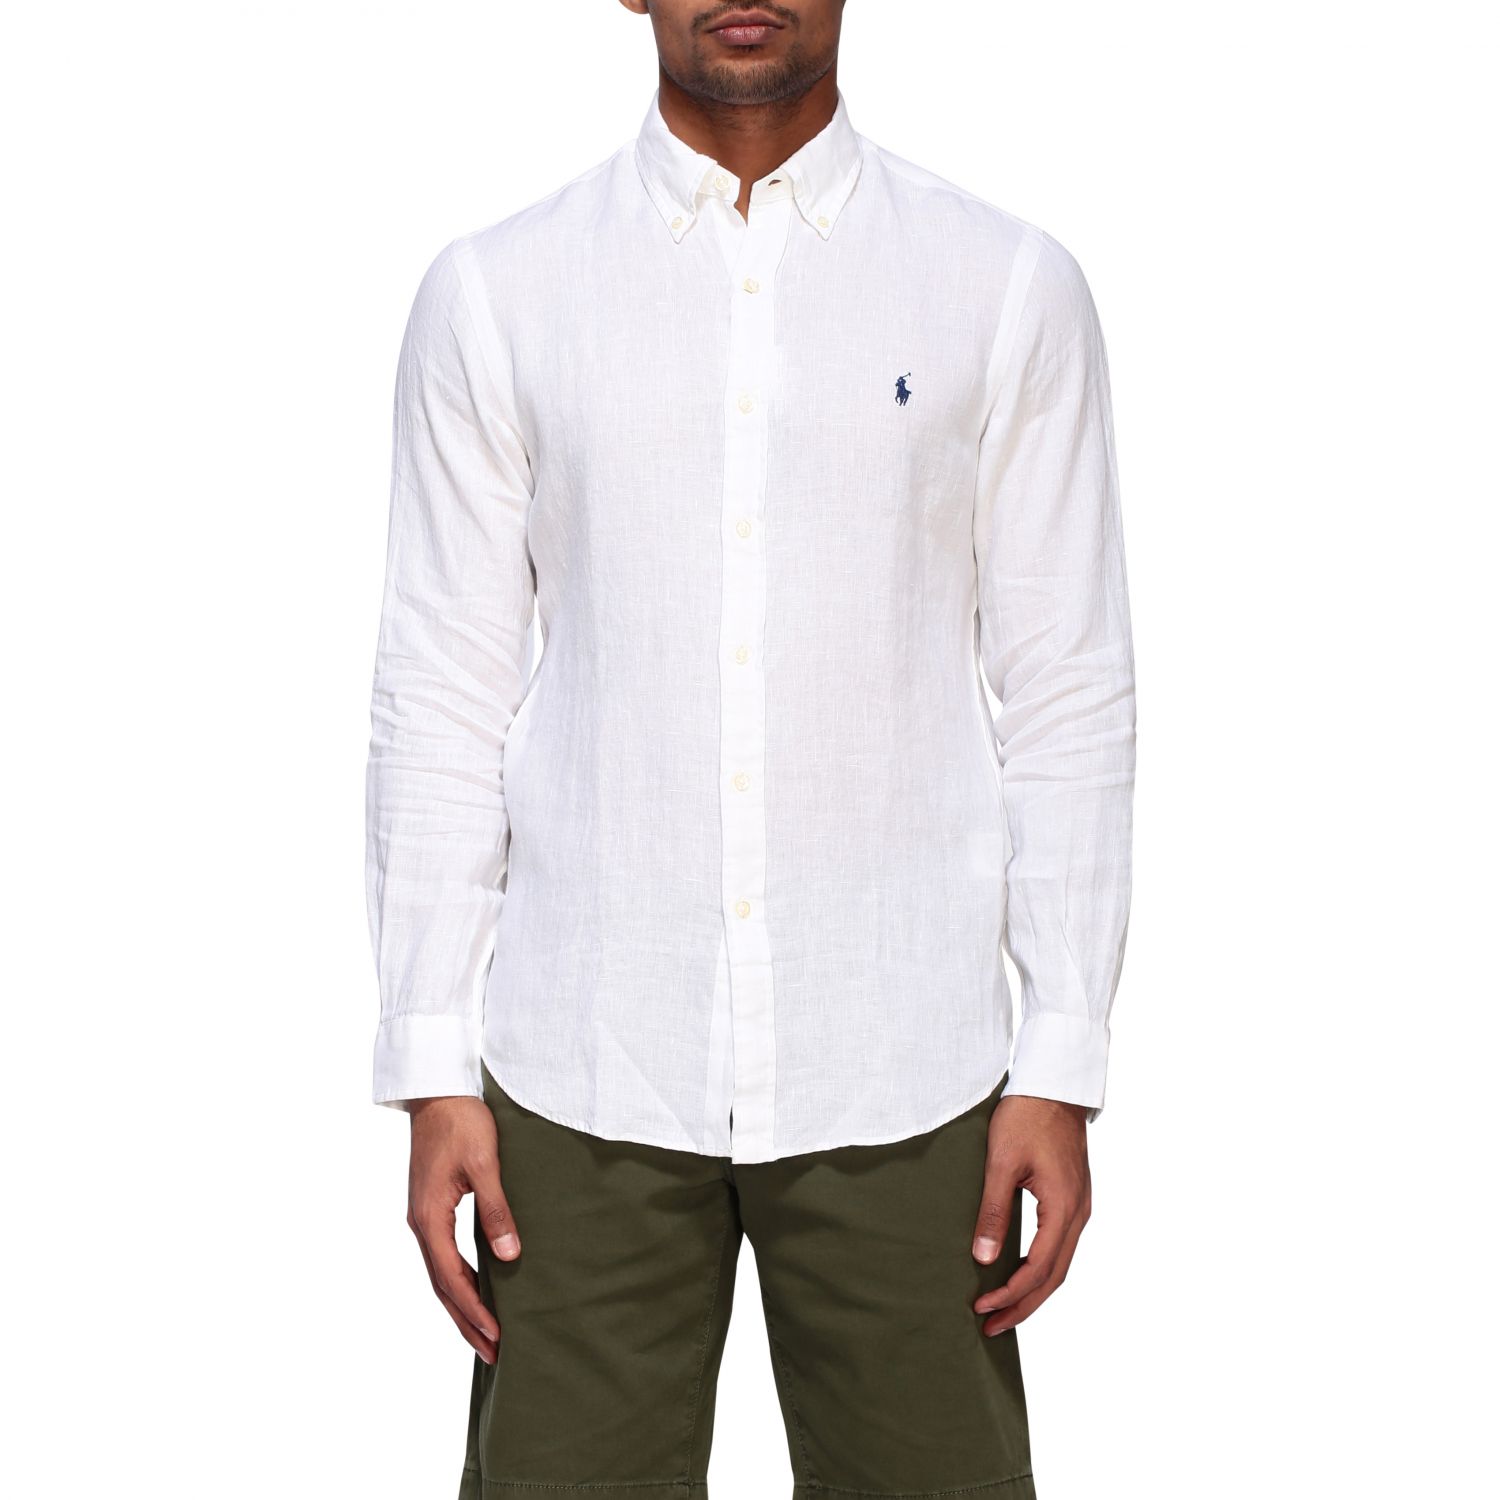 Polo Ralph Lauren linen shirt with 